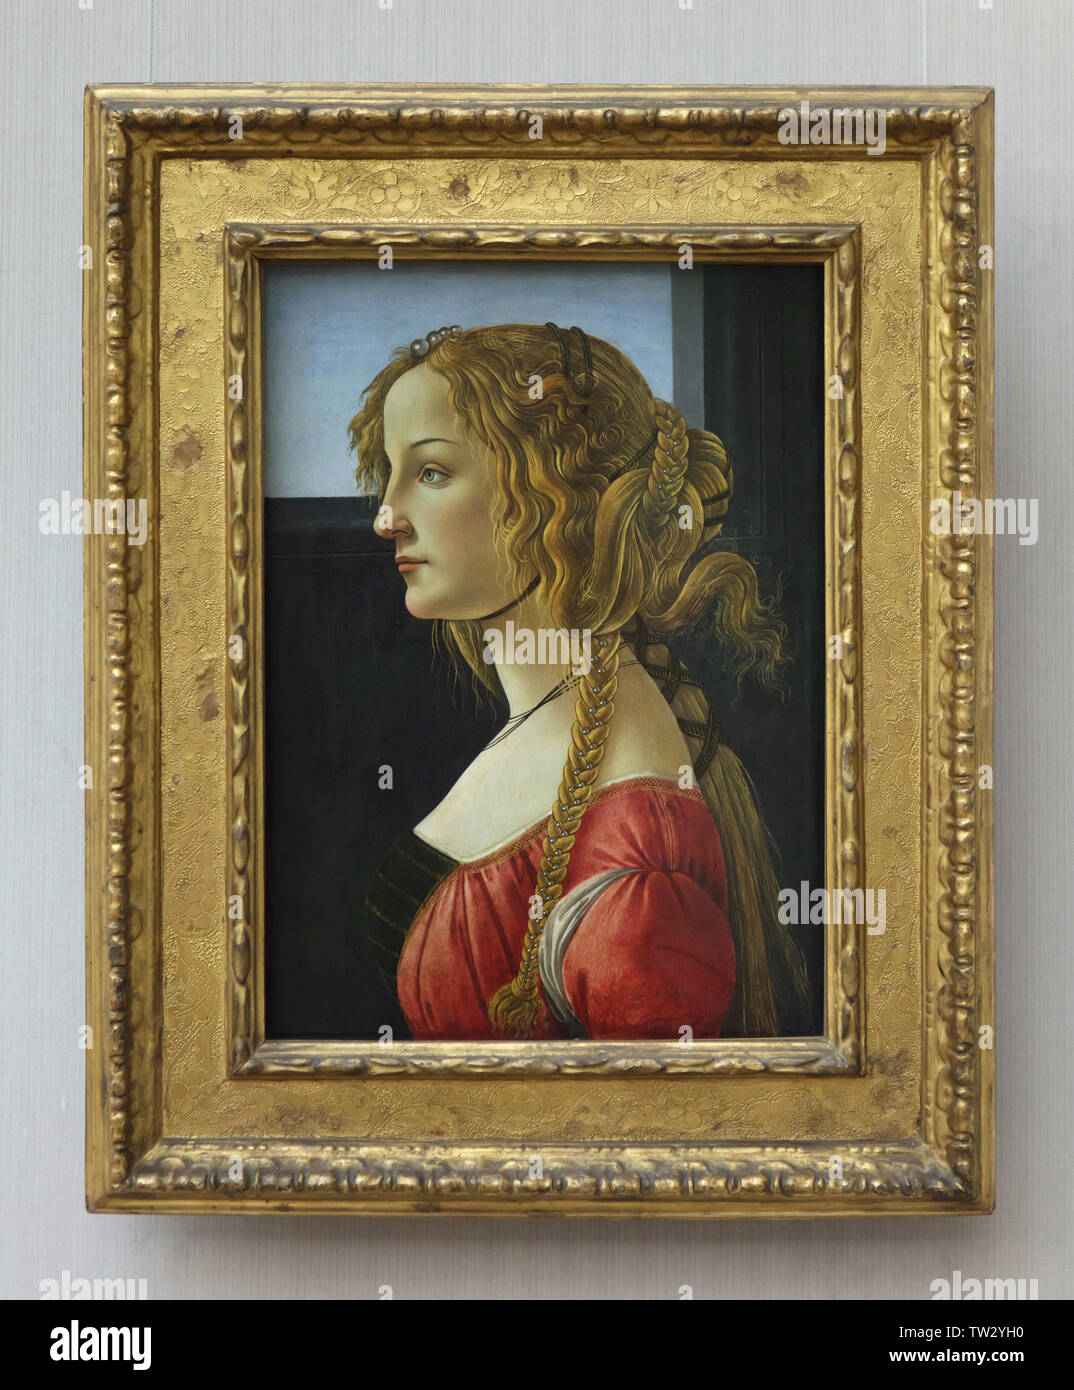 Gemälde "Porträt einer jungen Frau, vermutlich Simonetta Vespucci" durch die italienische Renaissance Maler Sandro Botticelli (1460-1464) auf der Anzeige in der Berliner Gemäldegalerie (Berlin Bildergalerie) in Berlin, Deutschland. Stockfoto